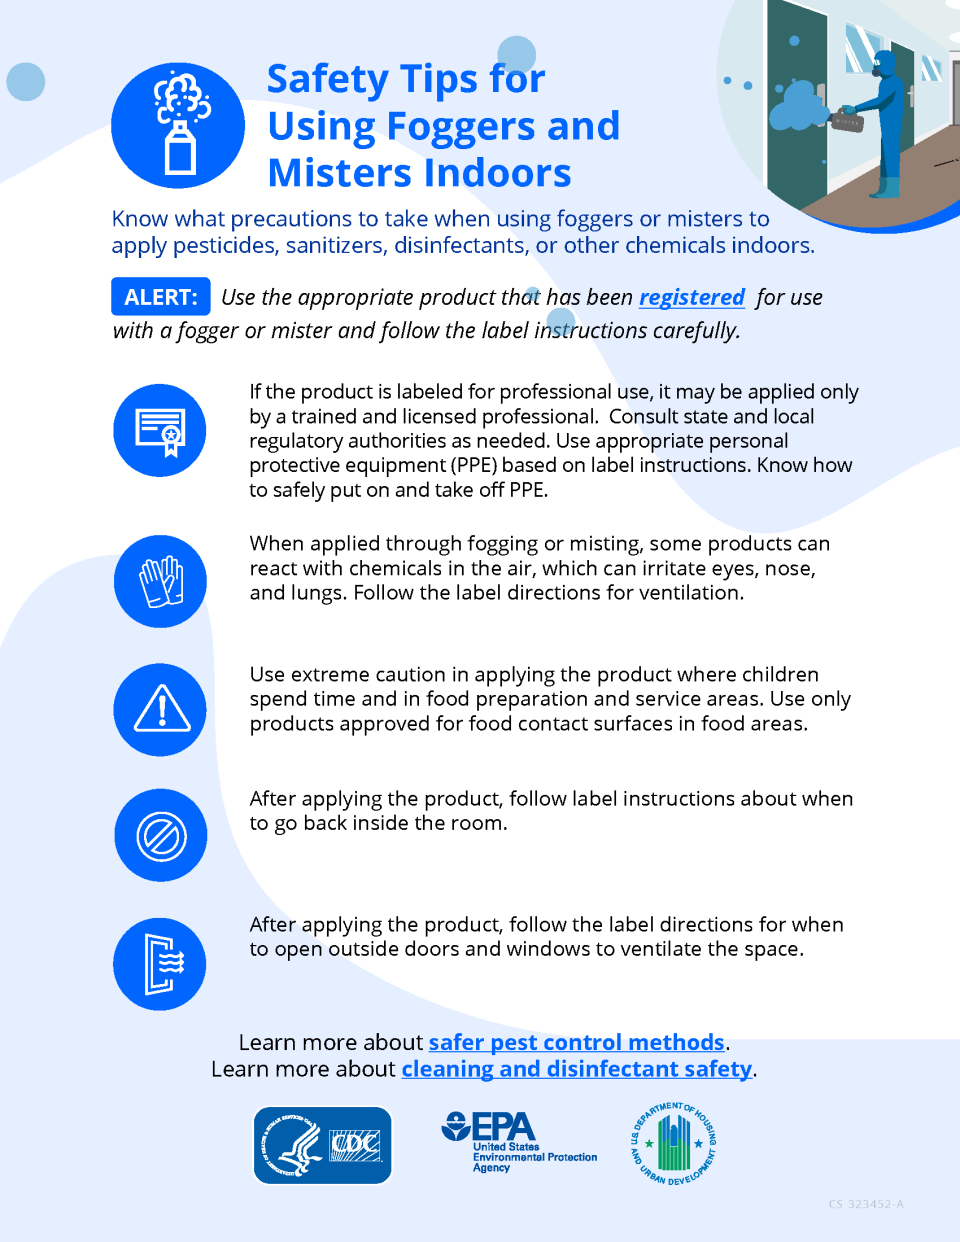 image of the fogger mister safety tip factsheet